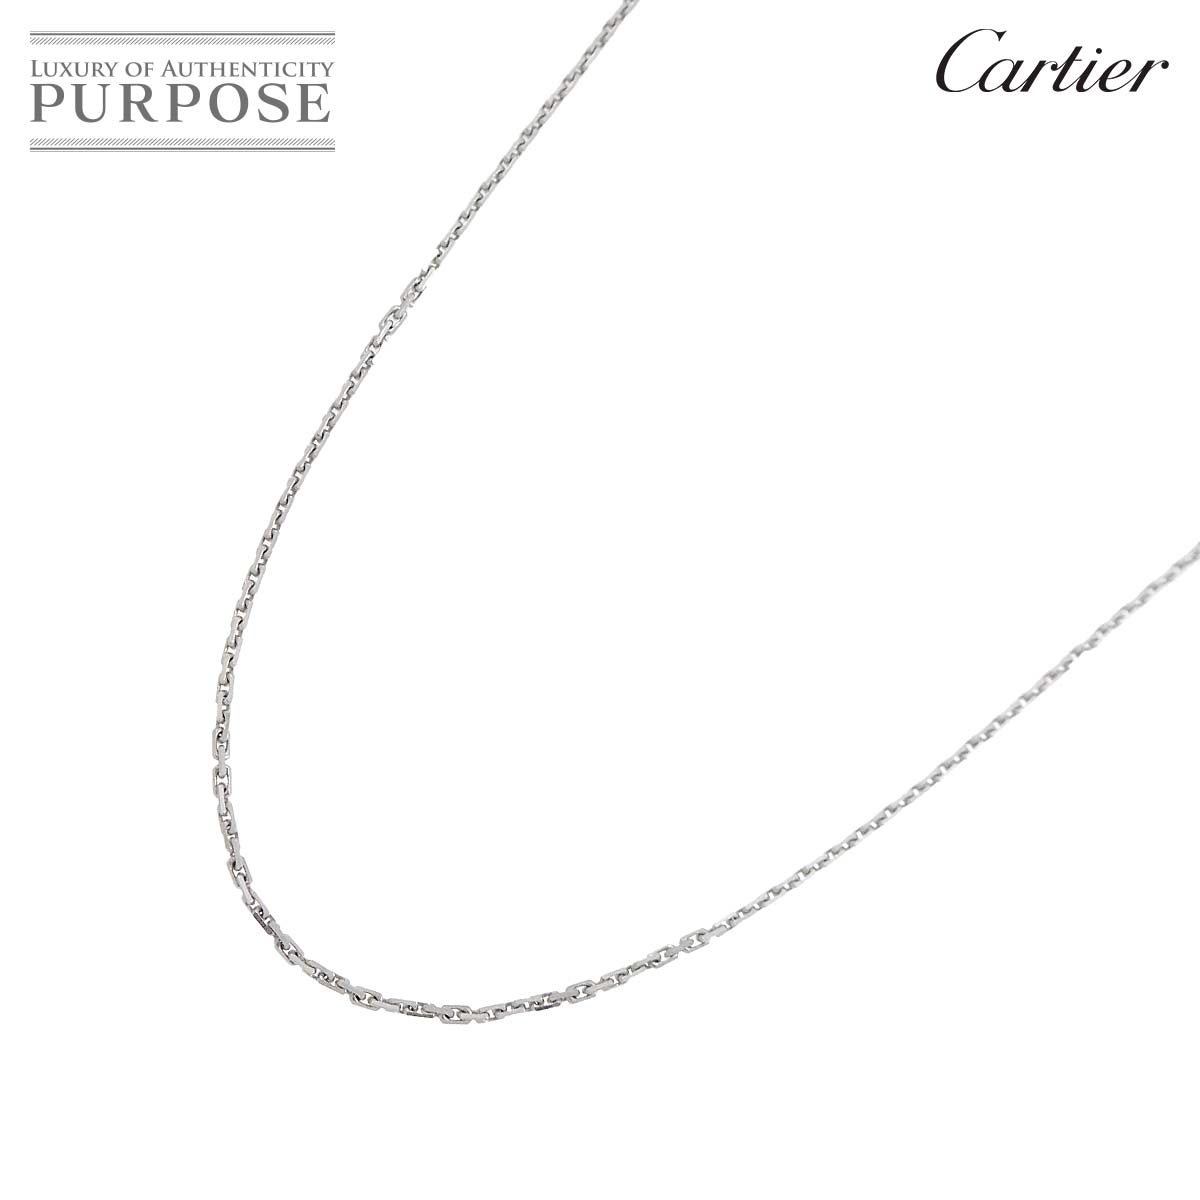 【新品同様】 カルティエ Cartier リンクスレーブ ネックレス 42cm K18 WG ホワイトゴールド 750 Necklace【中古】